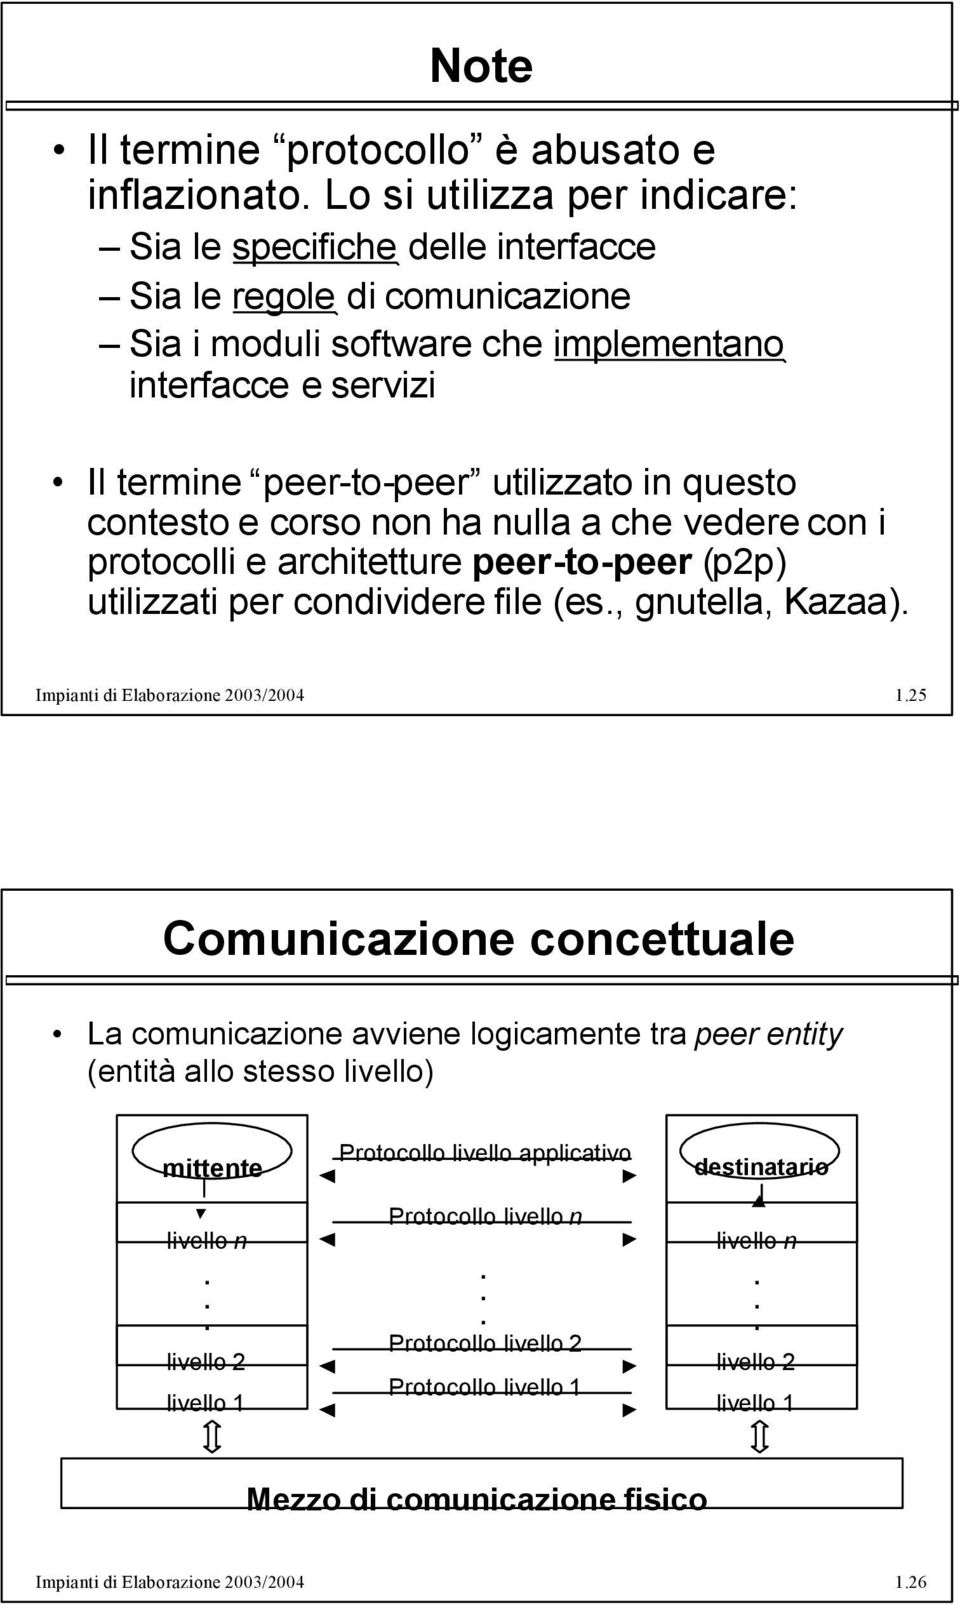 Kazaa) Impianti di Elaborazione 2003/2004 125 Comunicazione concettuale La comunicazione avviene logicamente tra peer entity (entità allo stesso livello) mittente livello n livello 2 livello 1